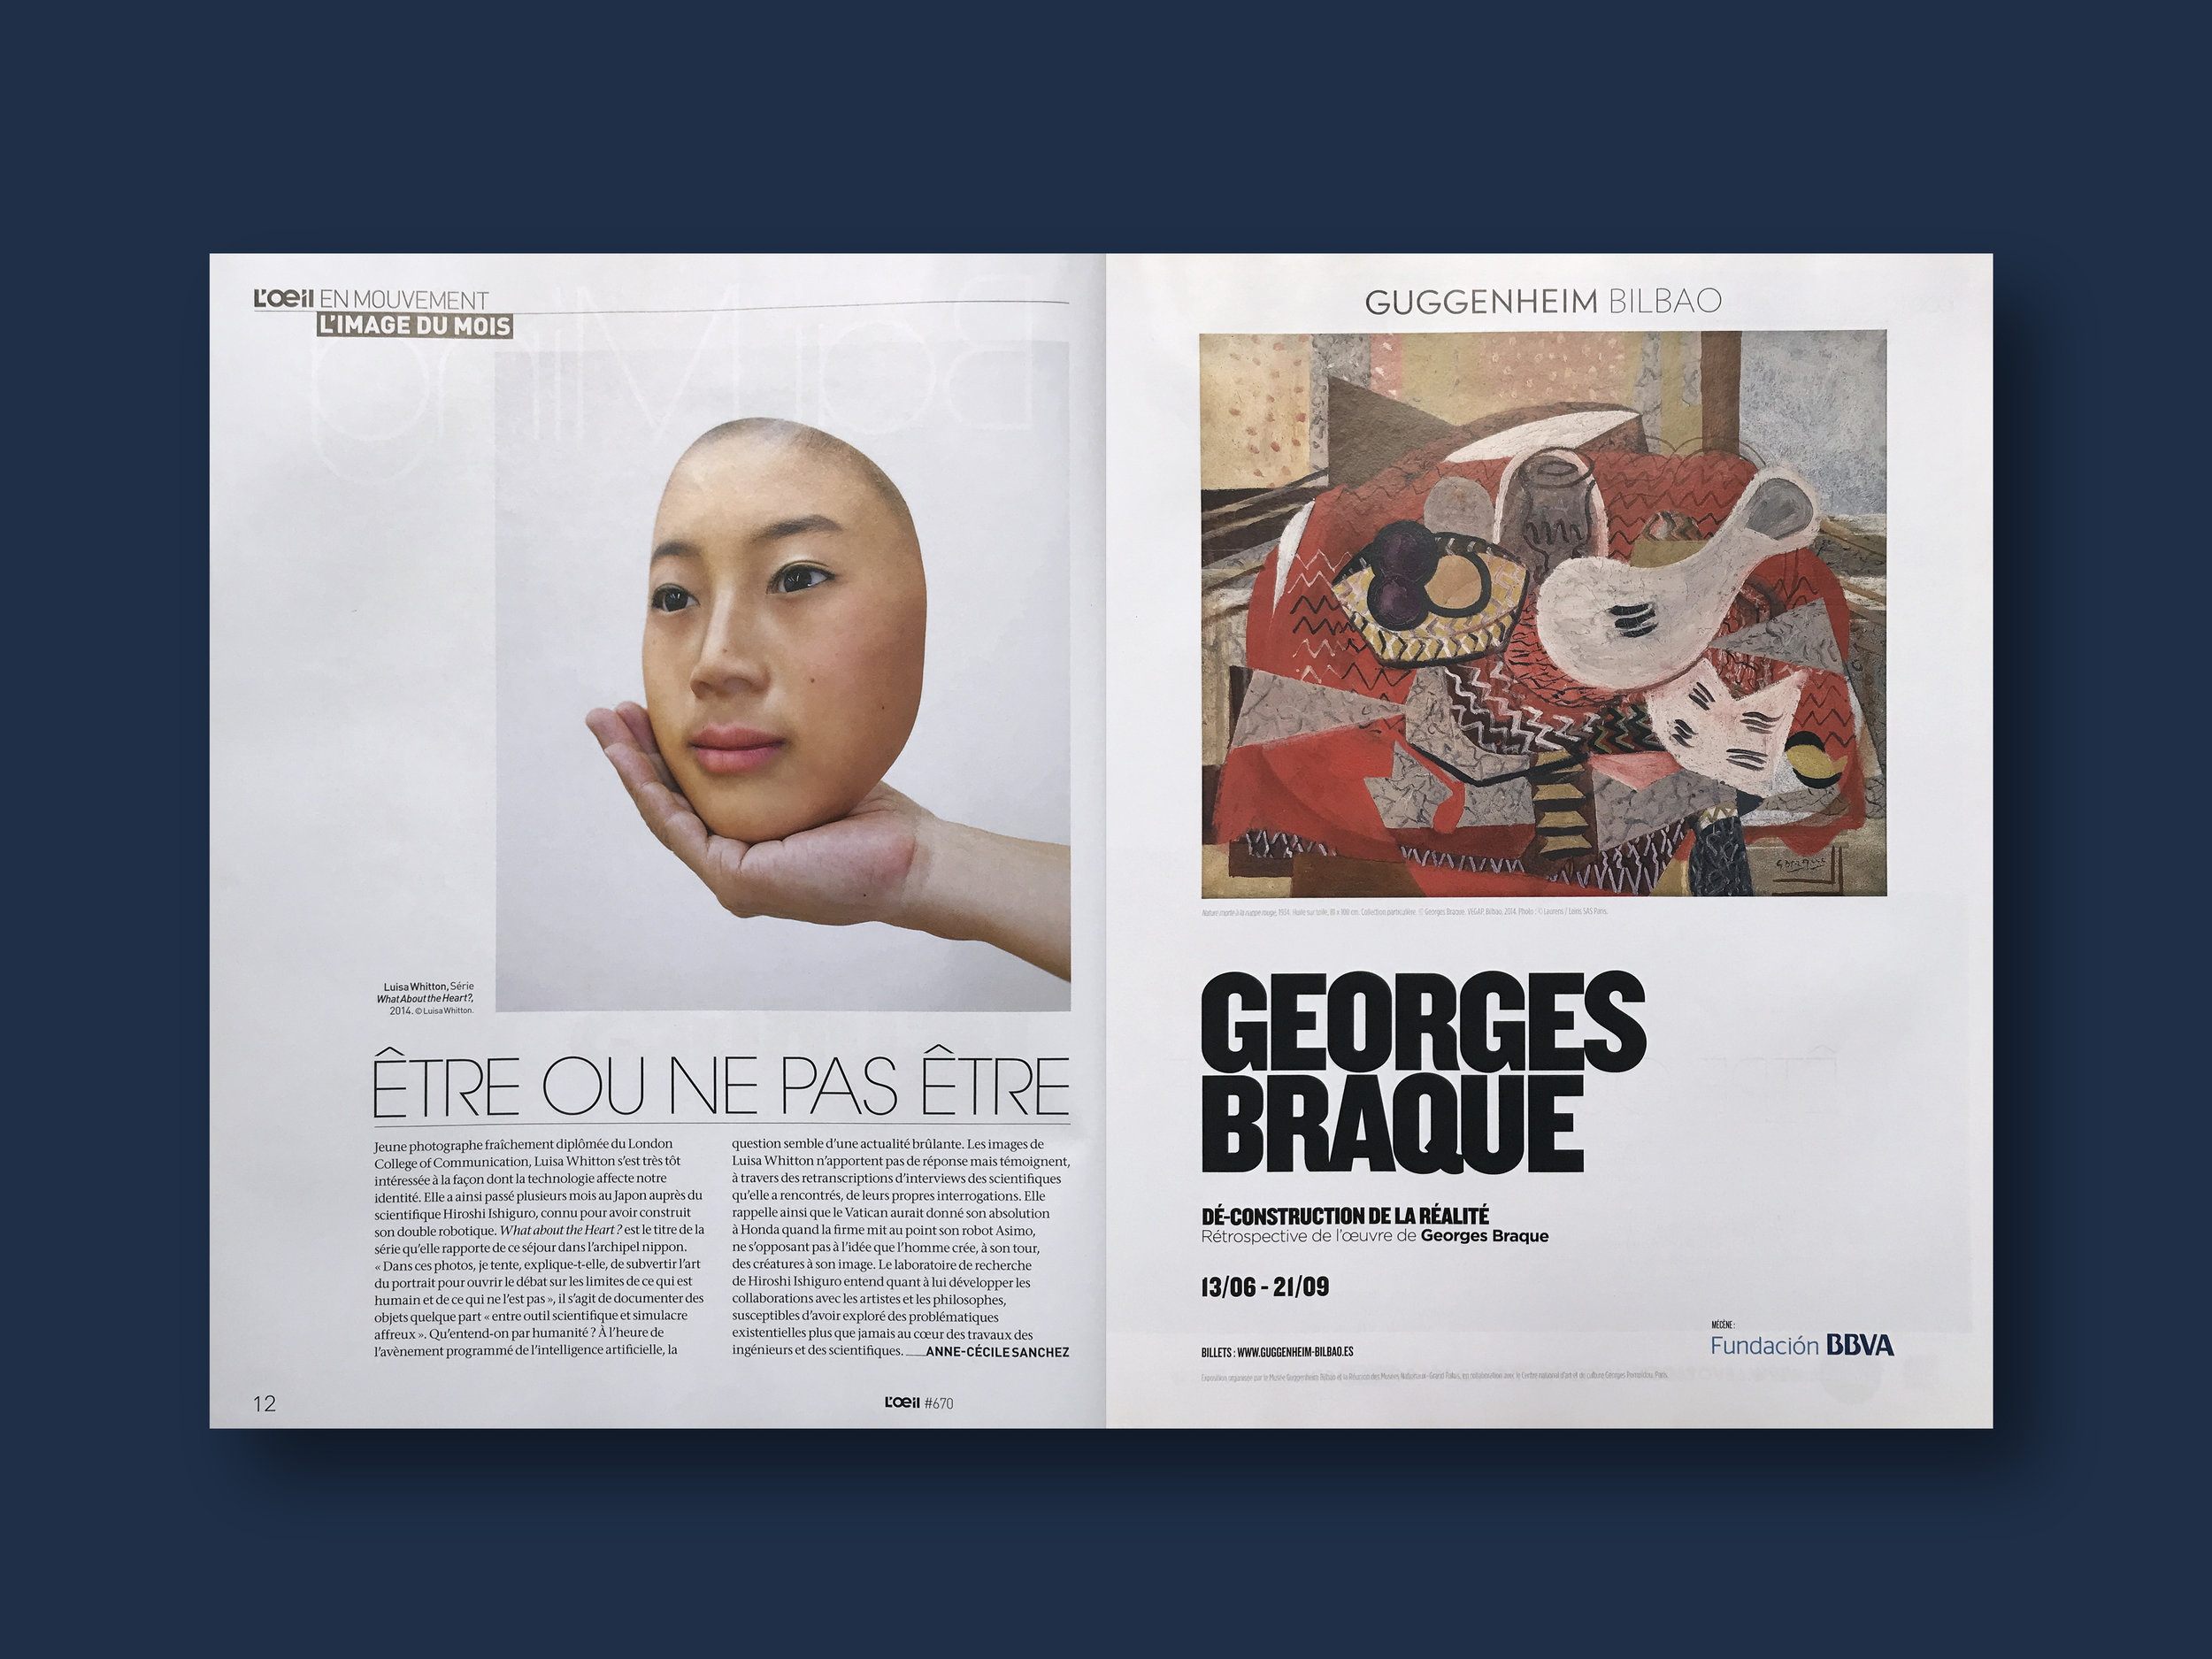   2014   L'oeil Magazine,  (FR) Issue 670, ' L'image Du Mois'   